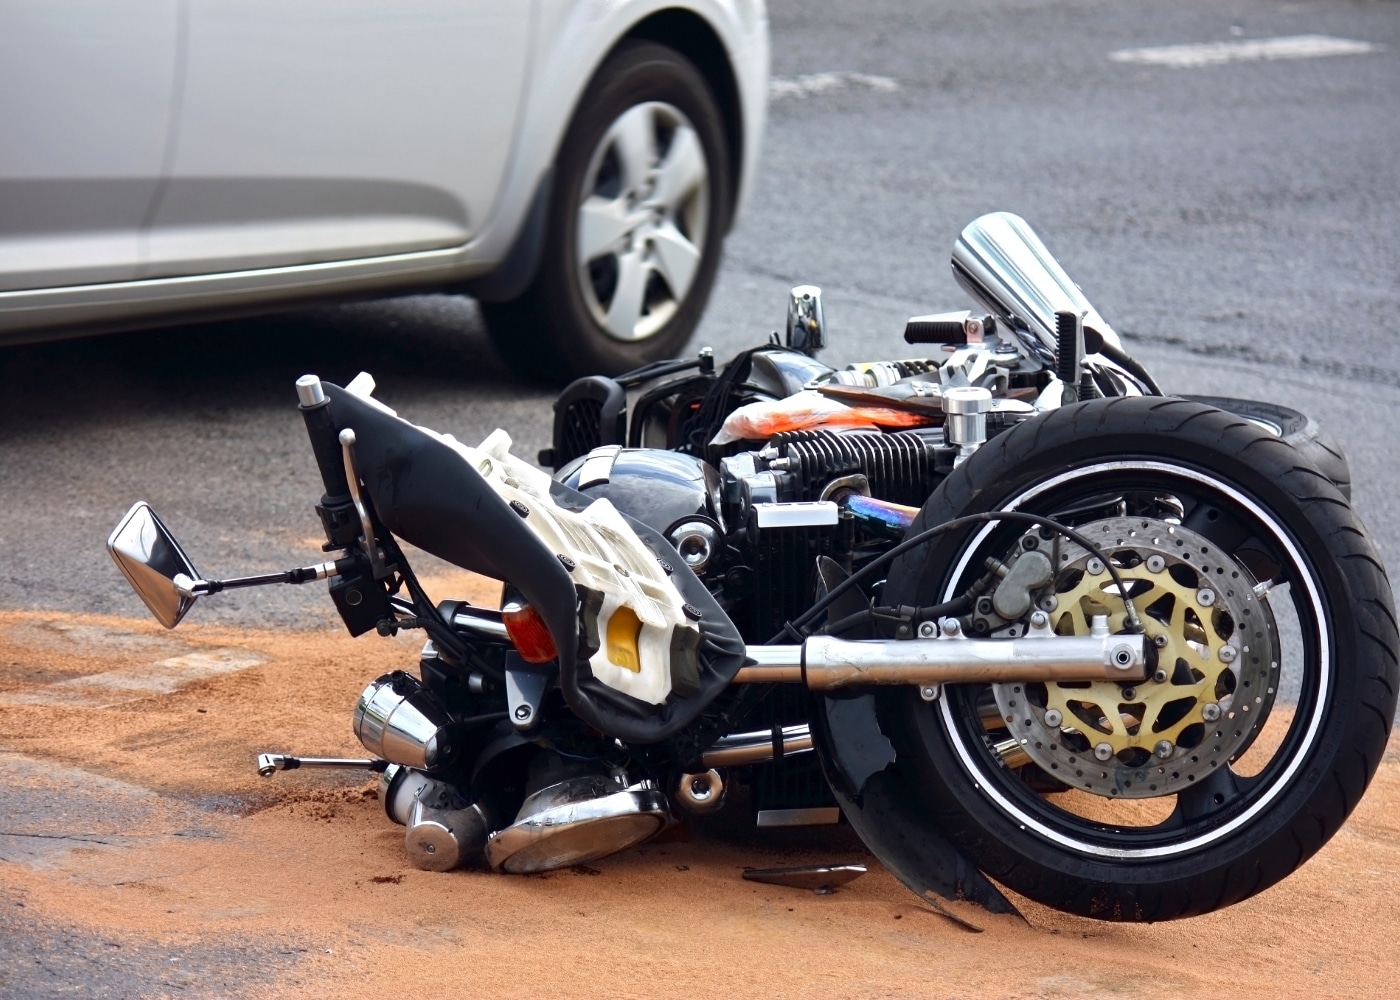 ¿Accidente de moto? qué hacer en una situación como esta